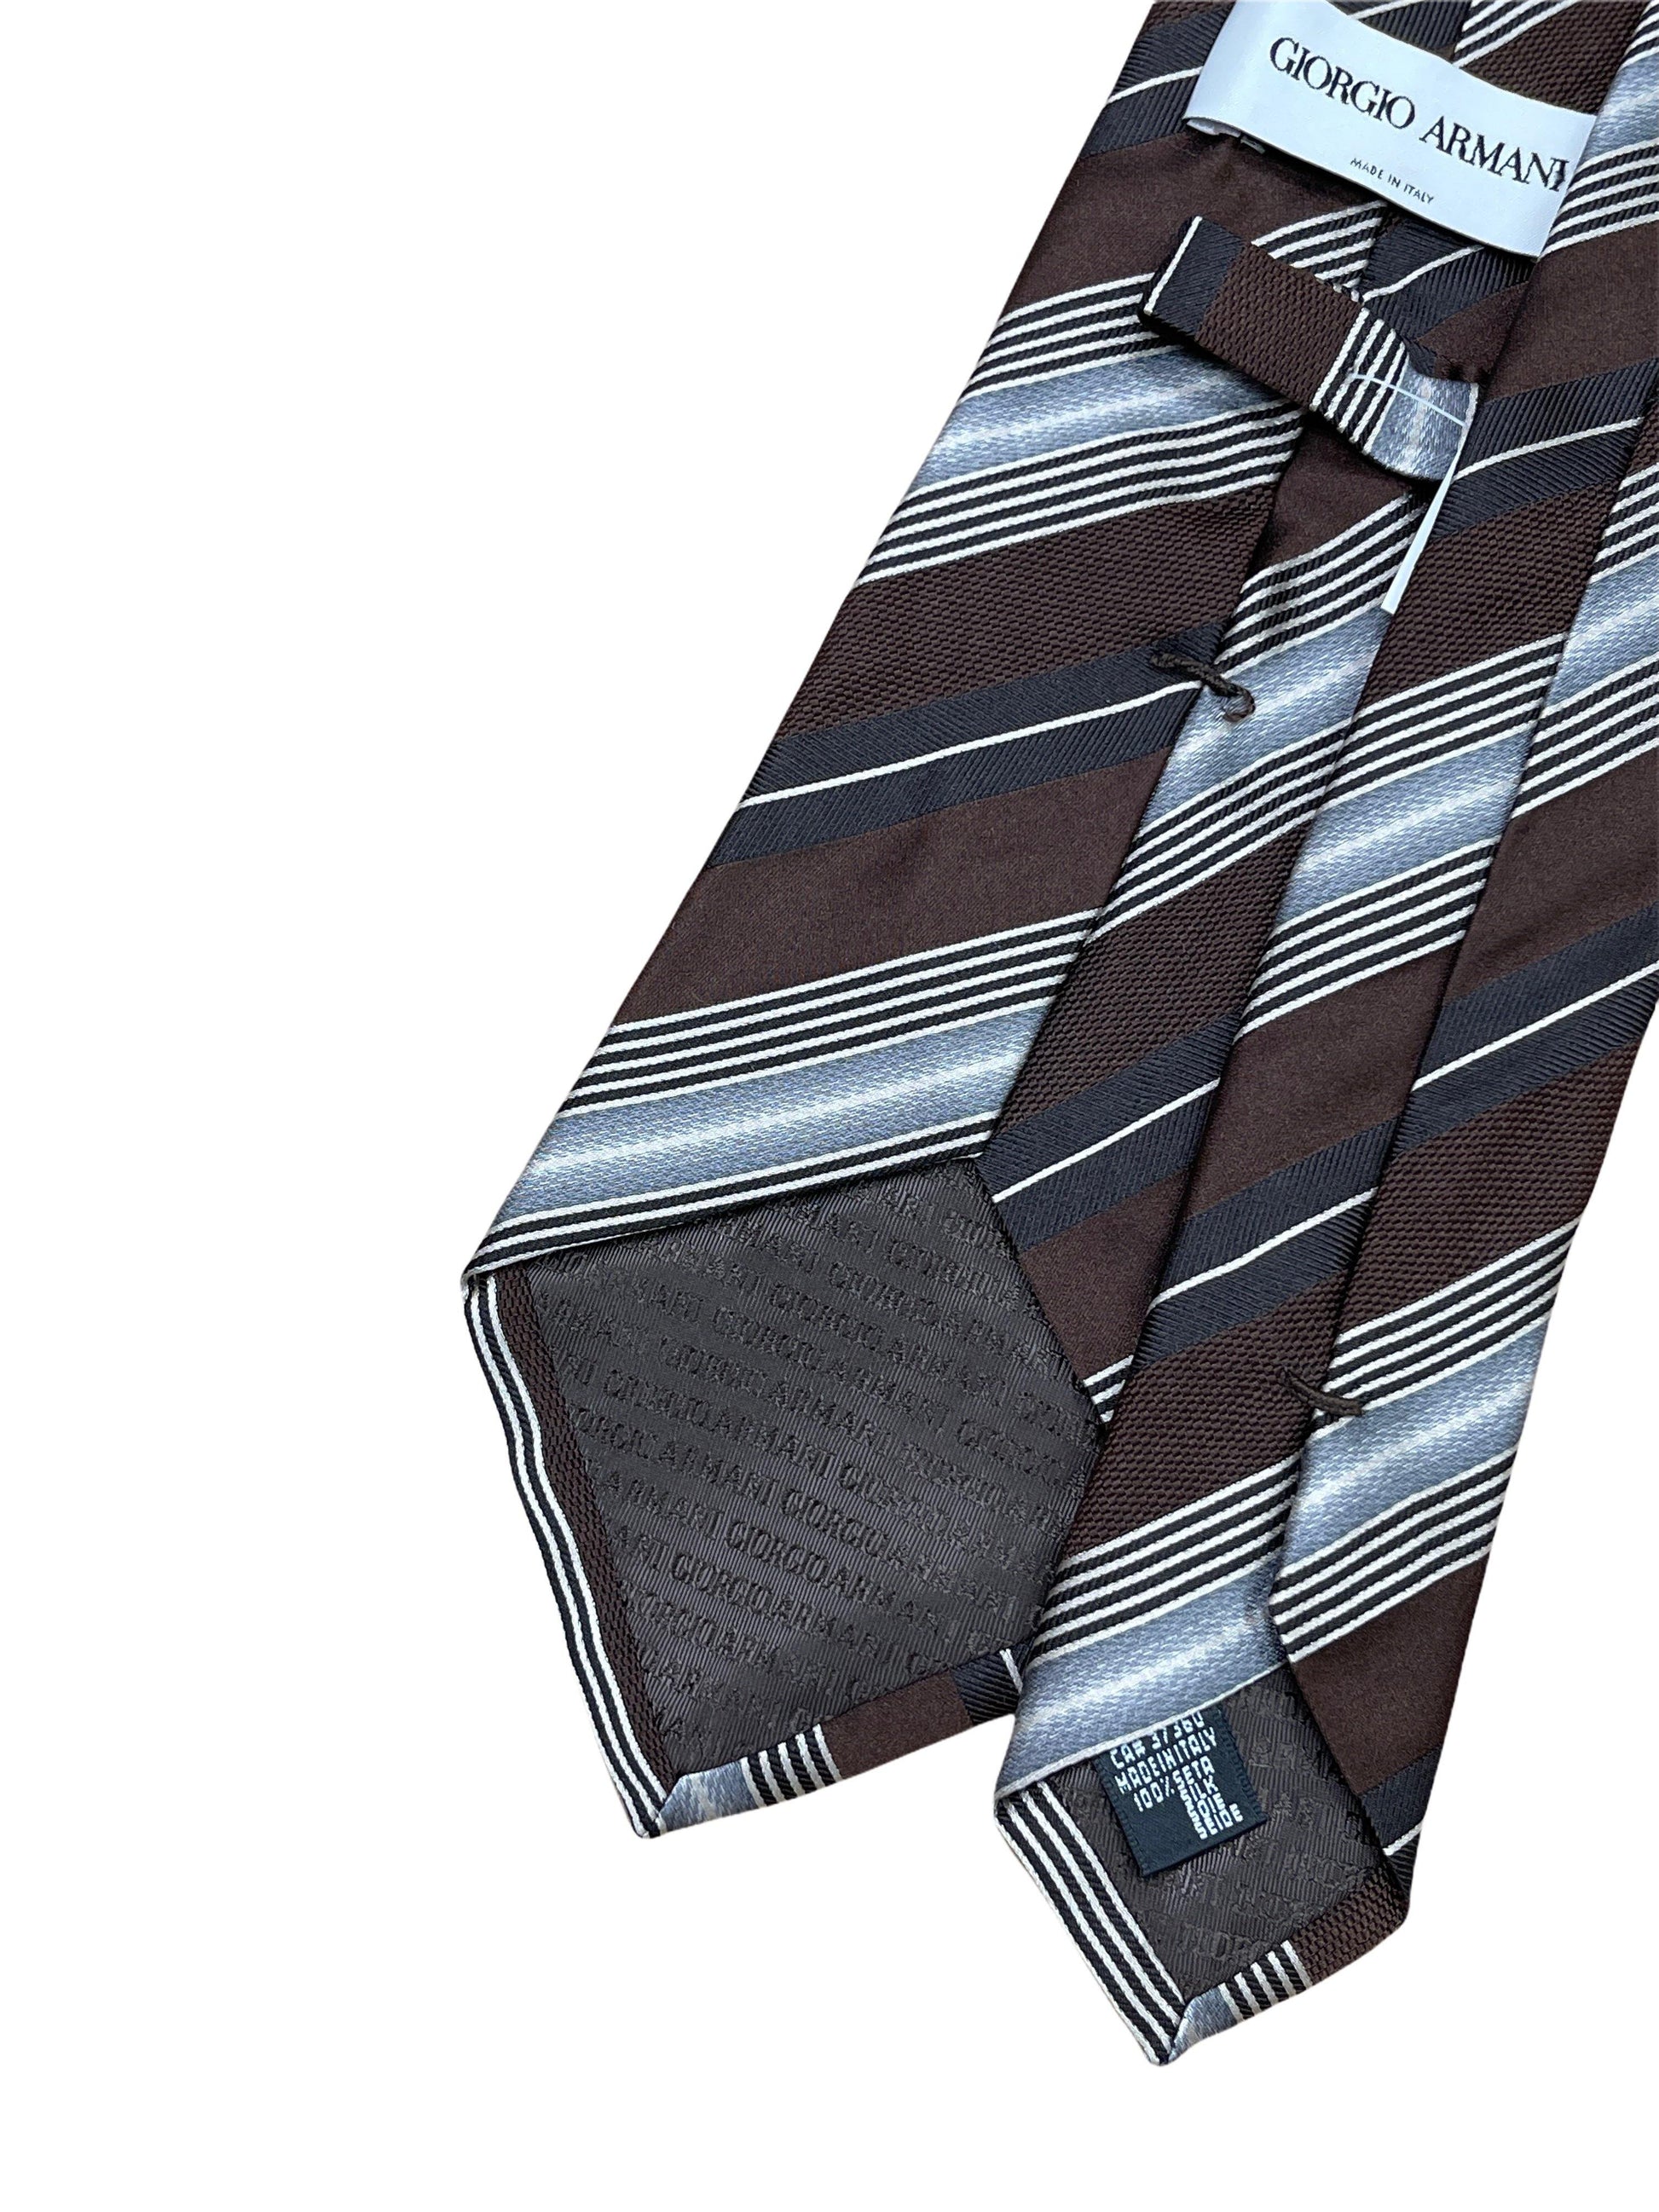 Giorgio Armani Brown & Silver Silk Striped Neck Tie - Genuine Design Luxury Consignment